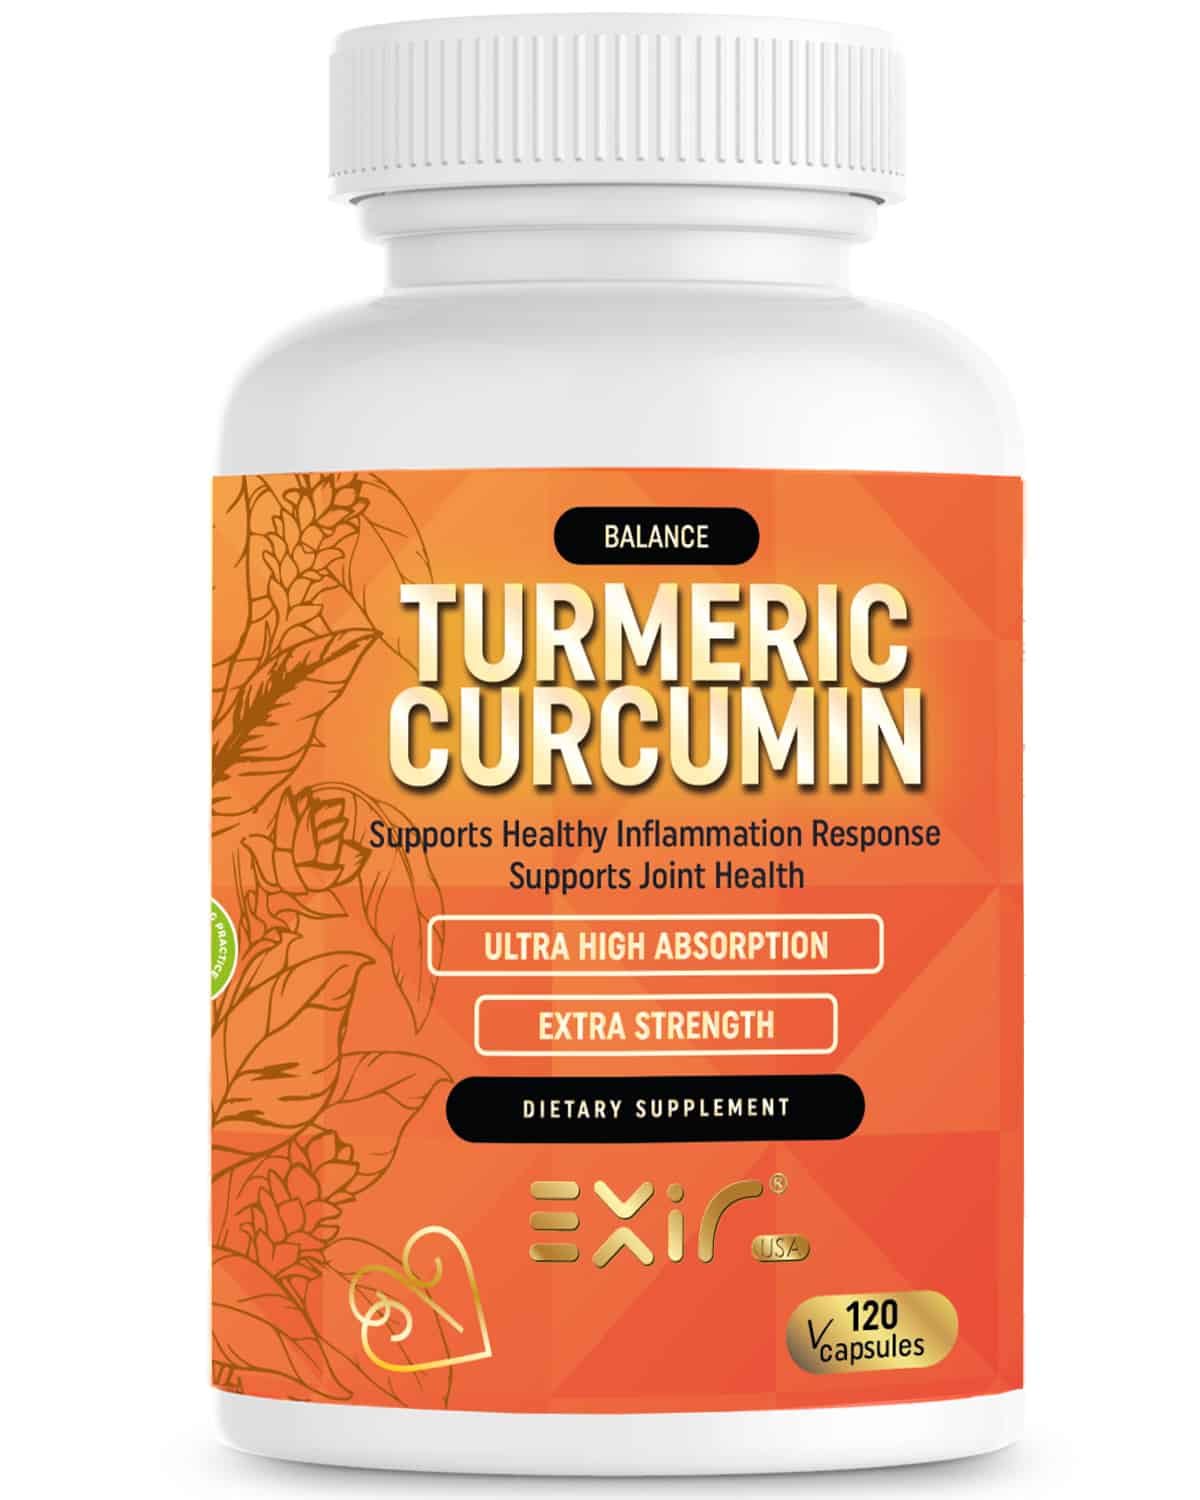 turmeric curcumin benefits